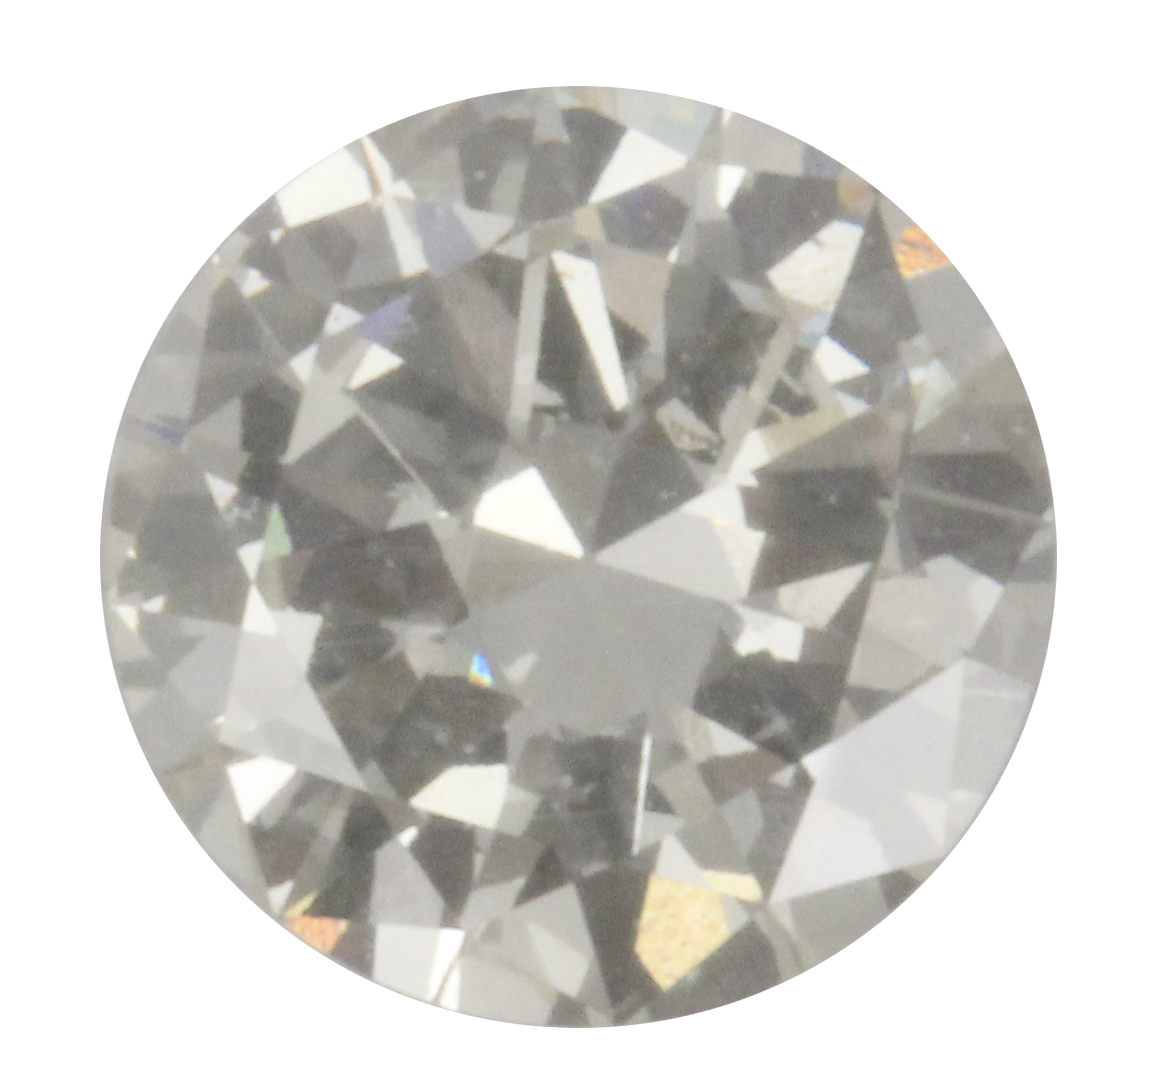 A 2,78 ct. brilliant cut diamond, colour L and clarity Vs2